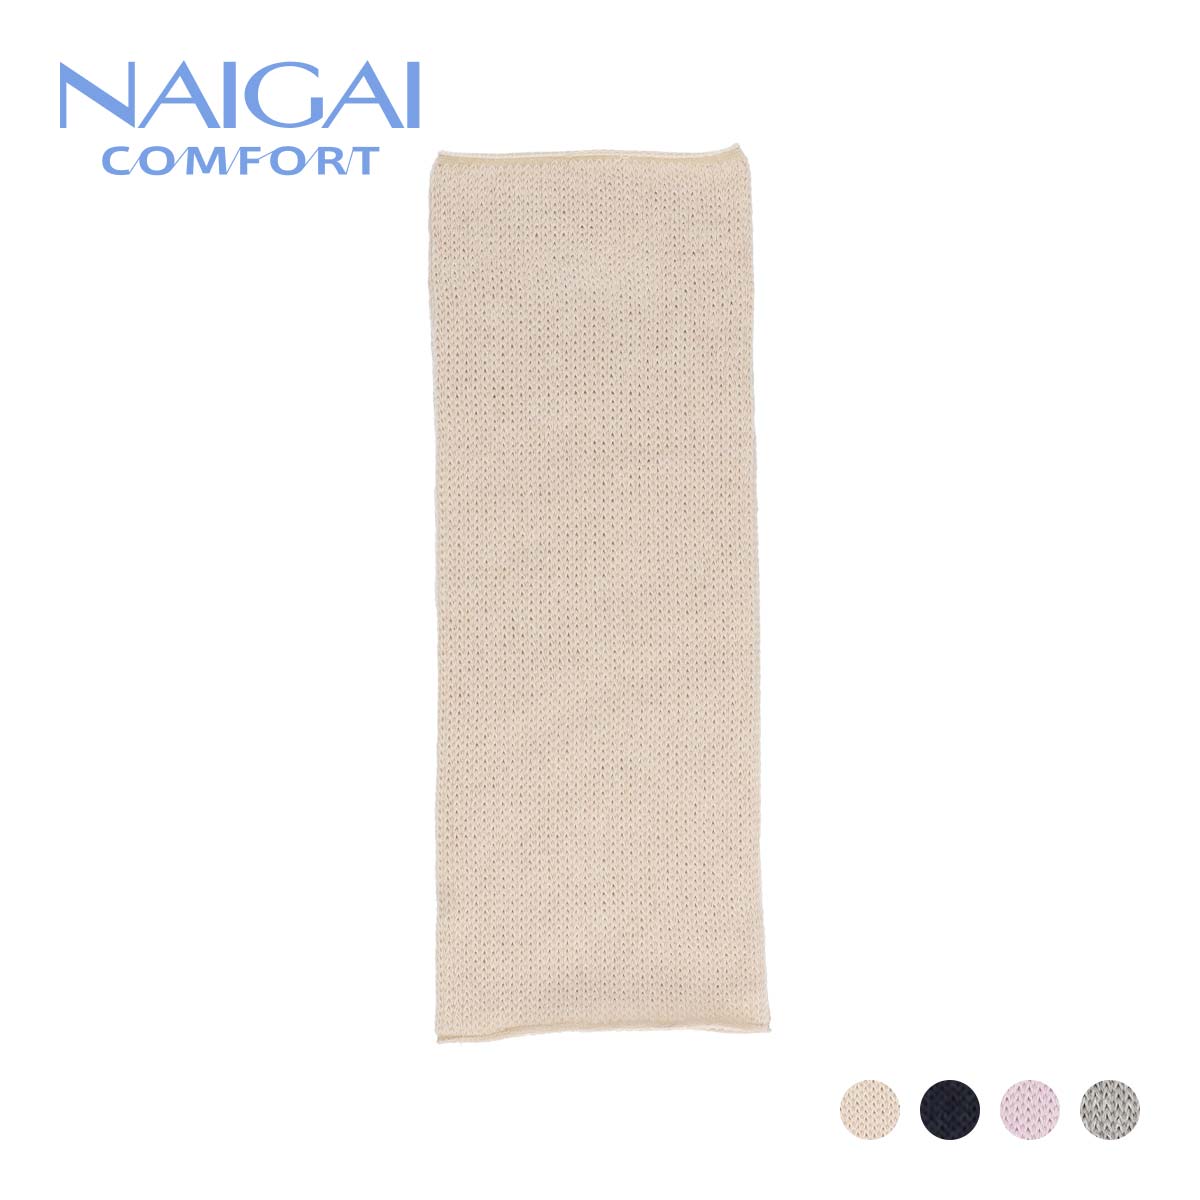 新品 Naigai Comfort ナイガイ コンフォート リッチェルのびのび 肌側シルク レッグウォーマー レディース 女性 婦人 プレゼント ギフト Toyama Nozai Co Jp